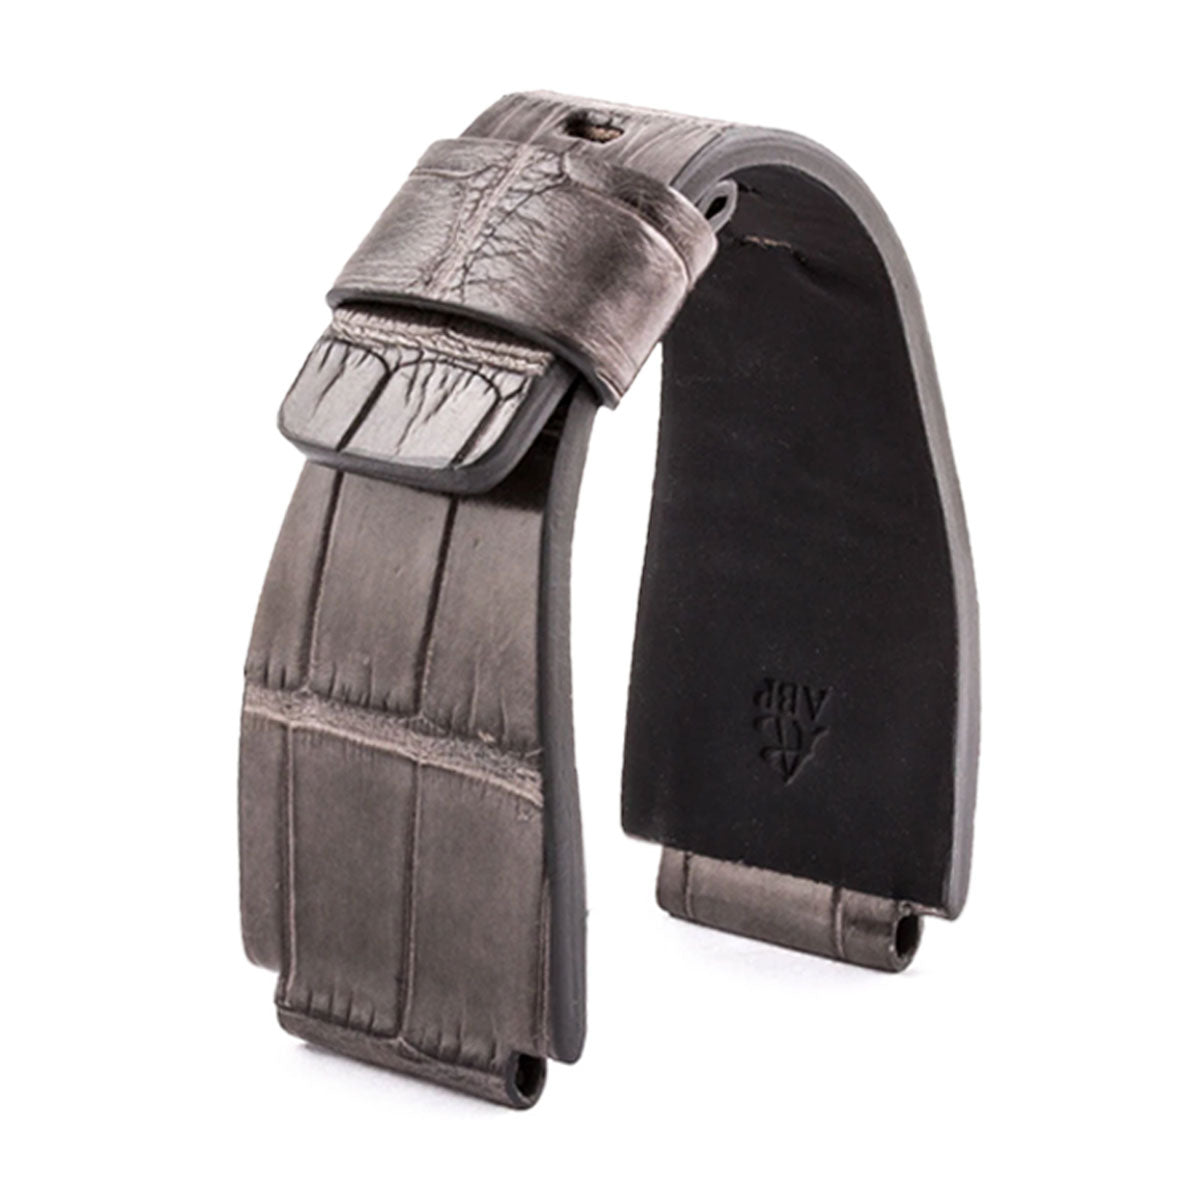 Bell & Ross - Bracelet montre cuir - Alligator sauvage (noir, gris, bleu, rouge, orange...) - watch band leather strap - ABP Concept -